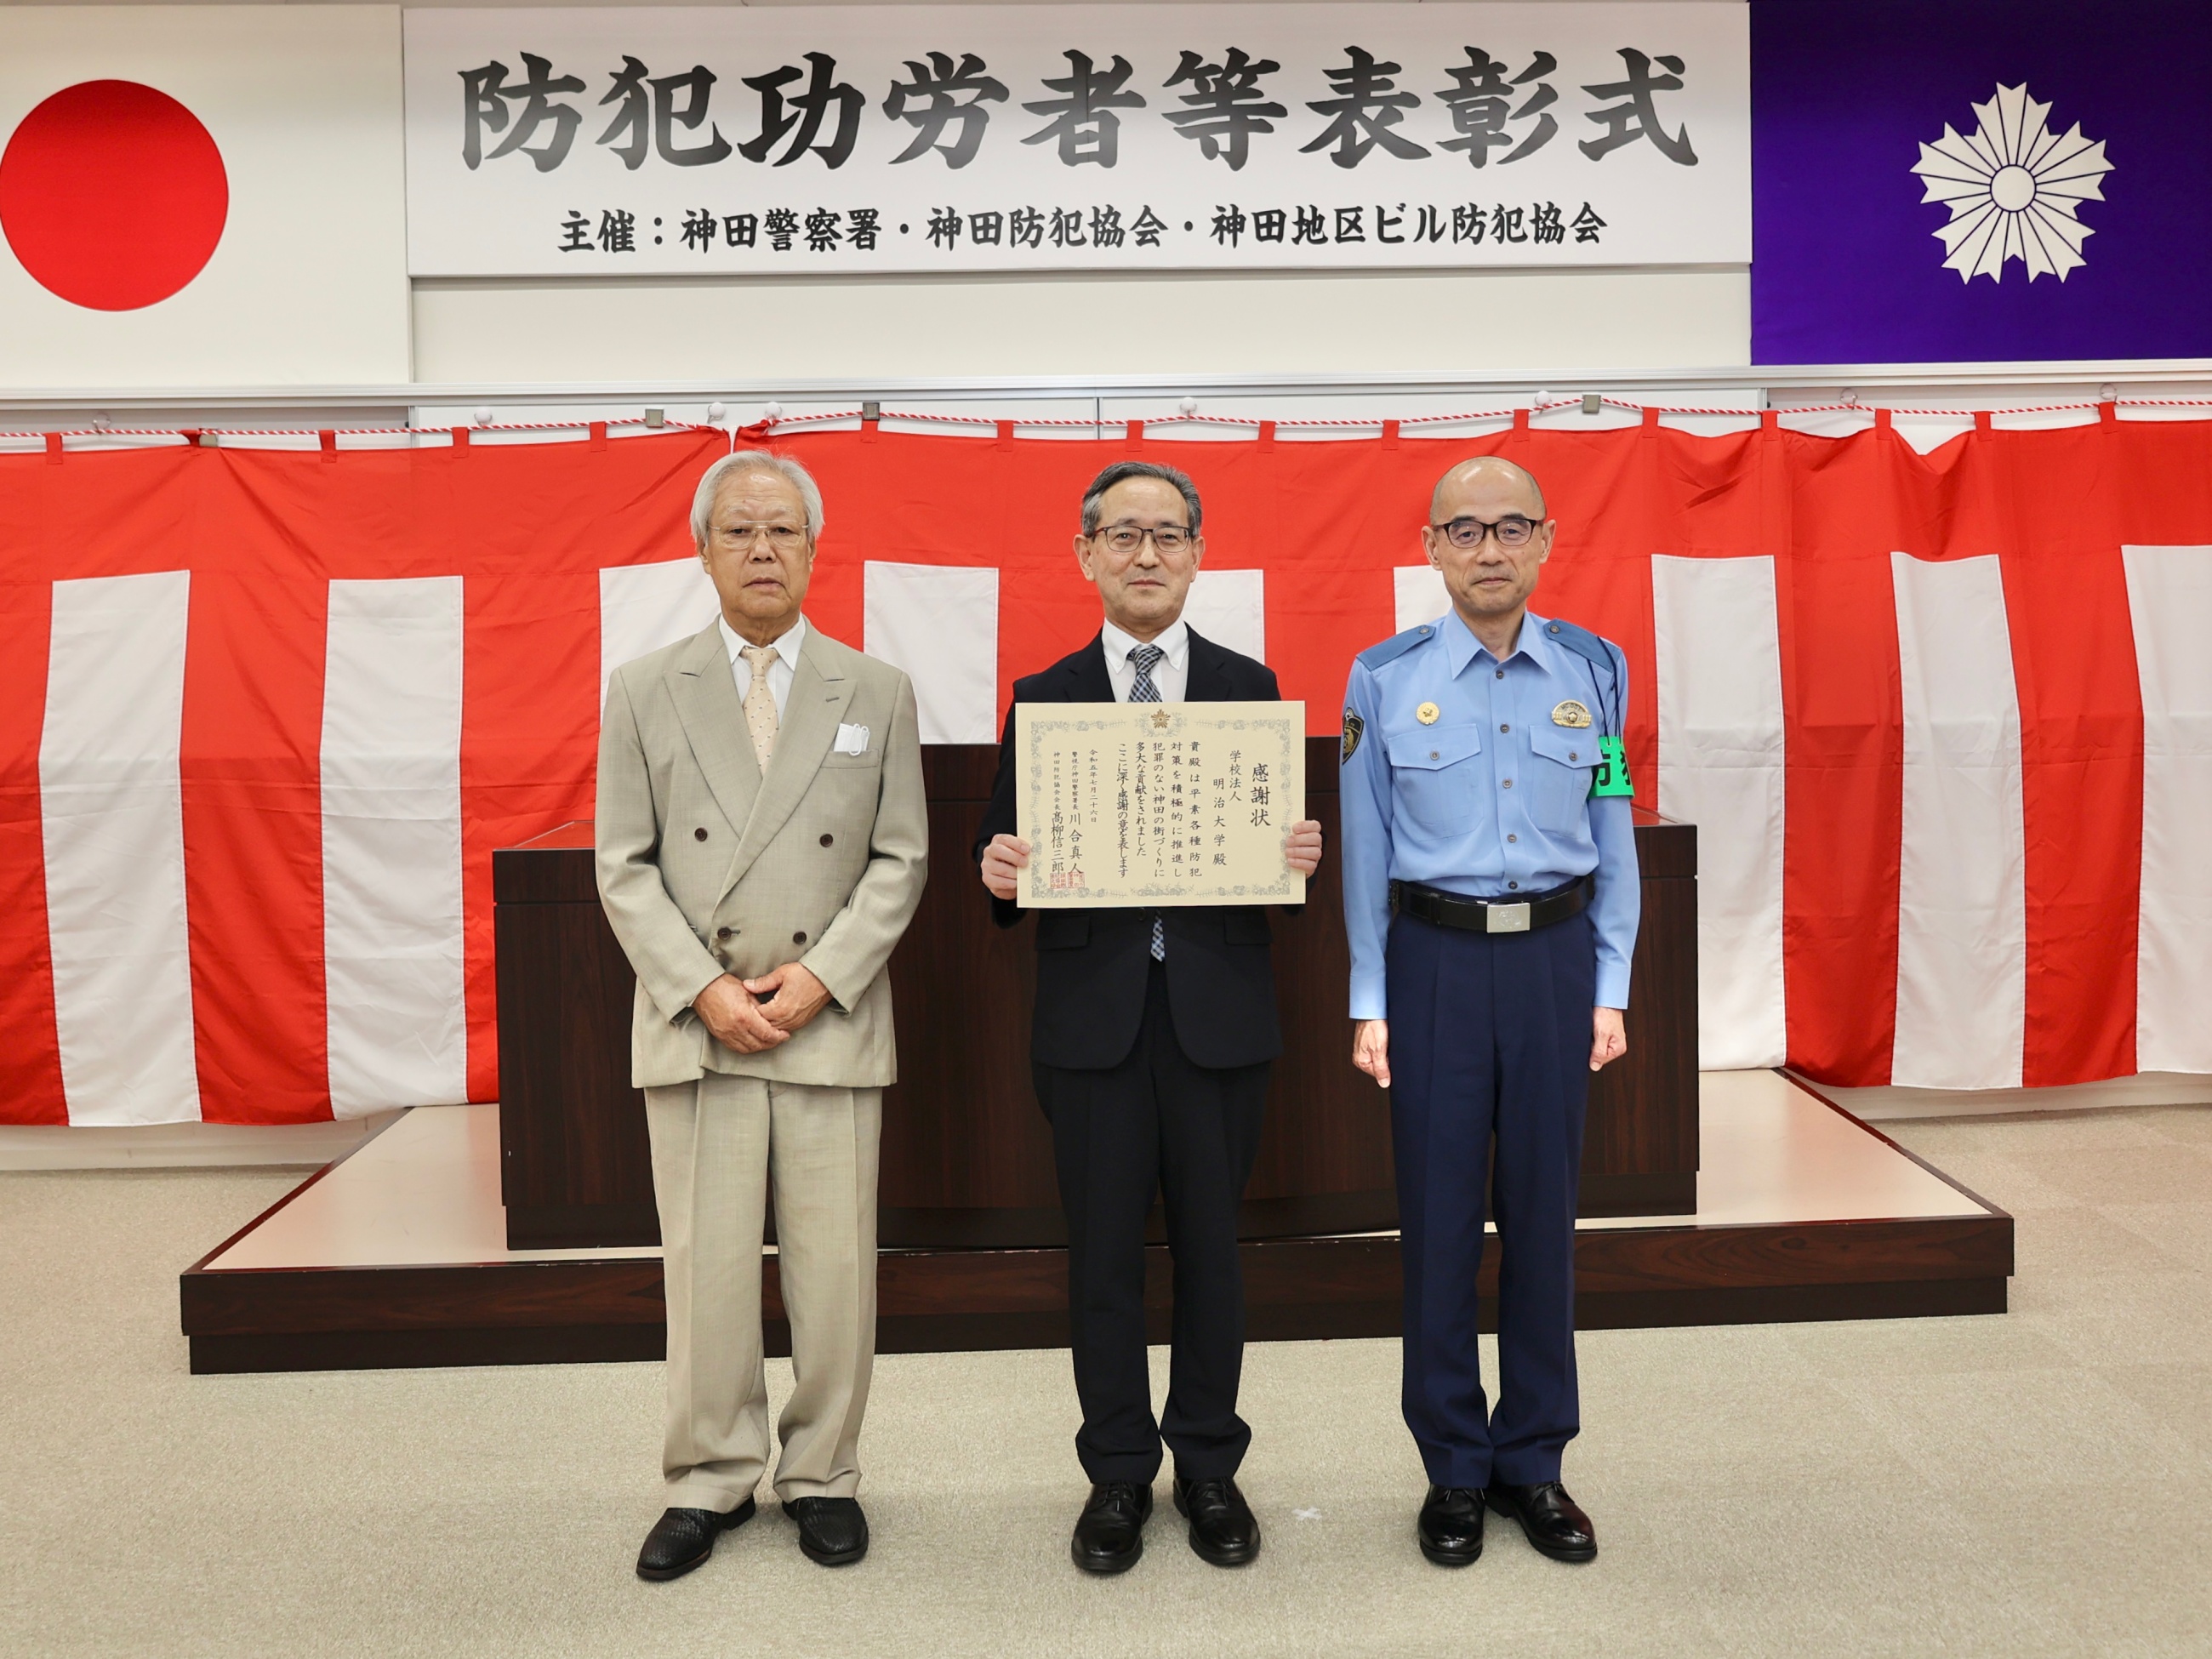 左から高柳信三郎神田防犯協会会長、西山副学長、川合真人神田警察署長